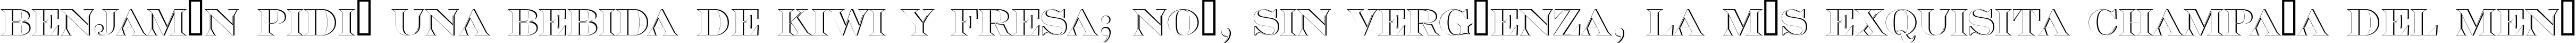 Пример написания шрифтом a_SeriferTitulSh текста на испанском